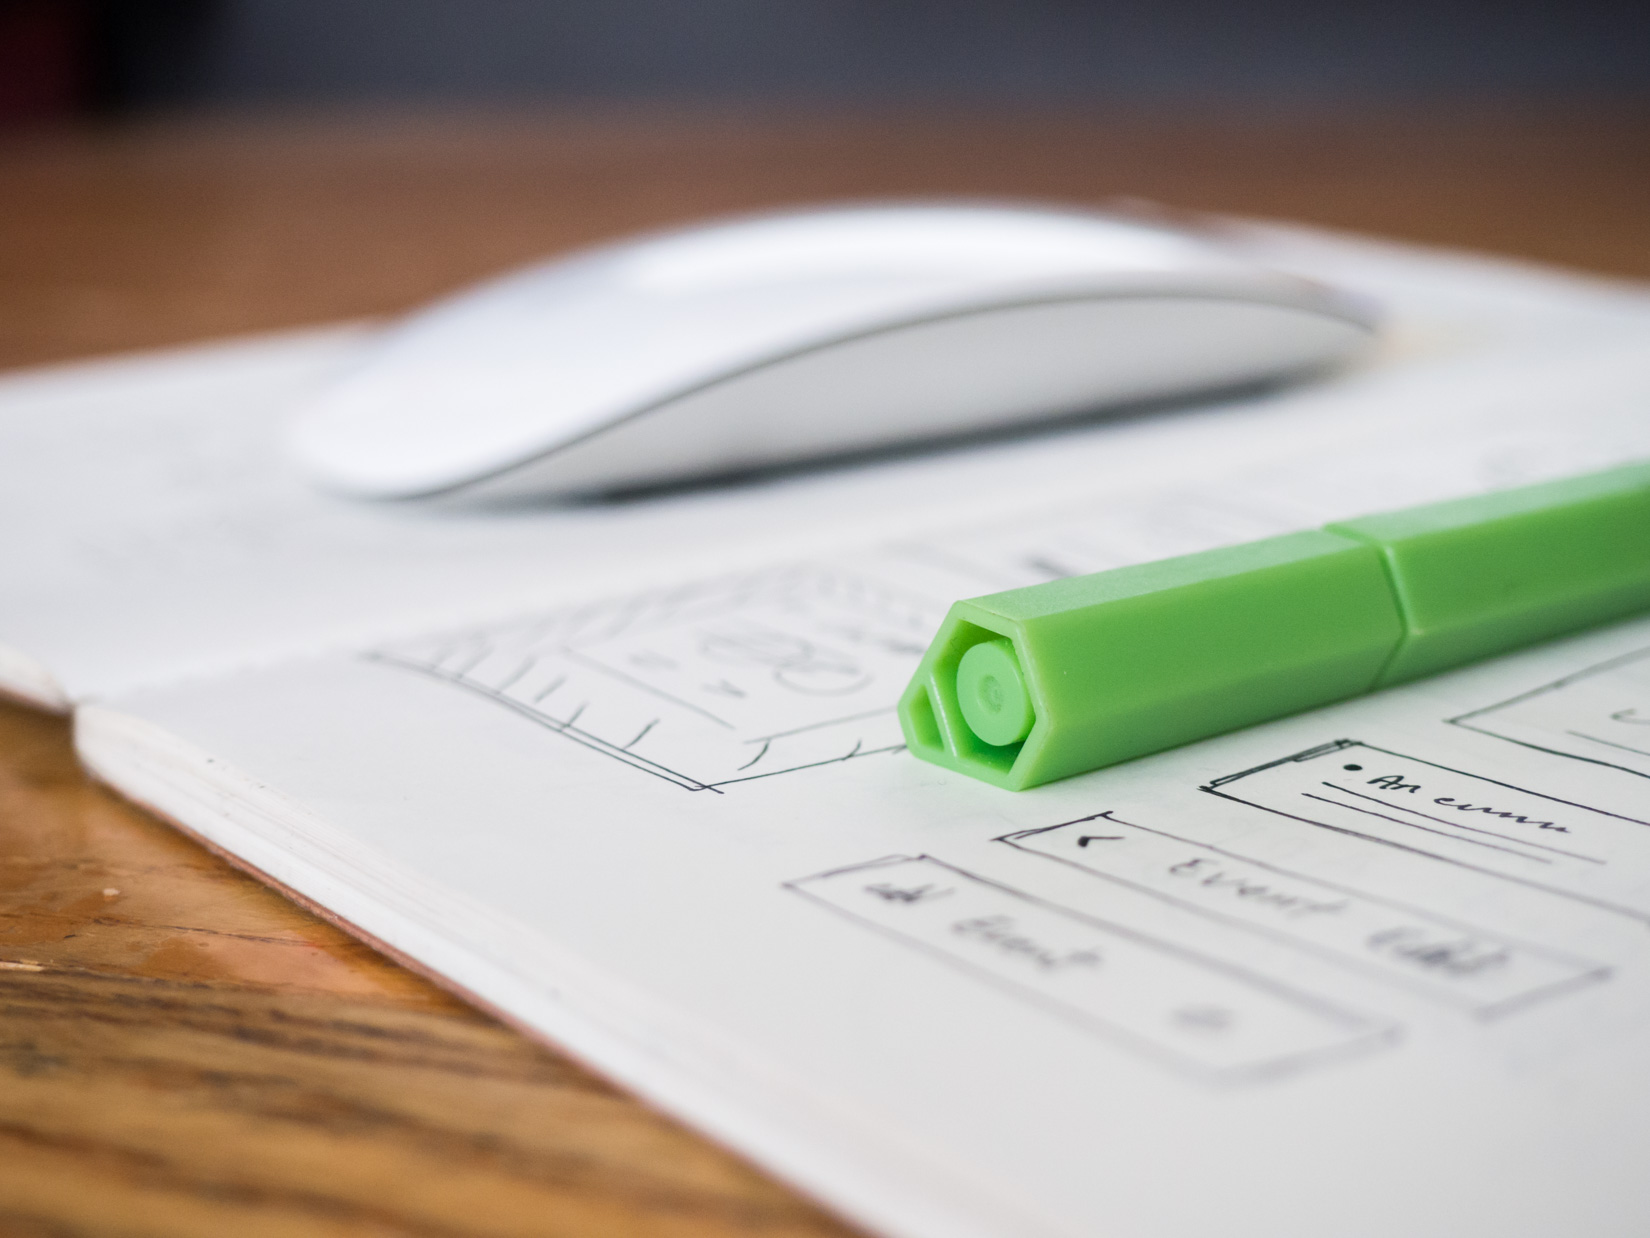 Green Pen and Sketchbook on Desk